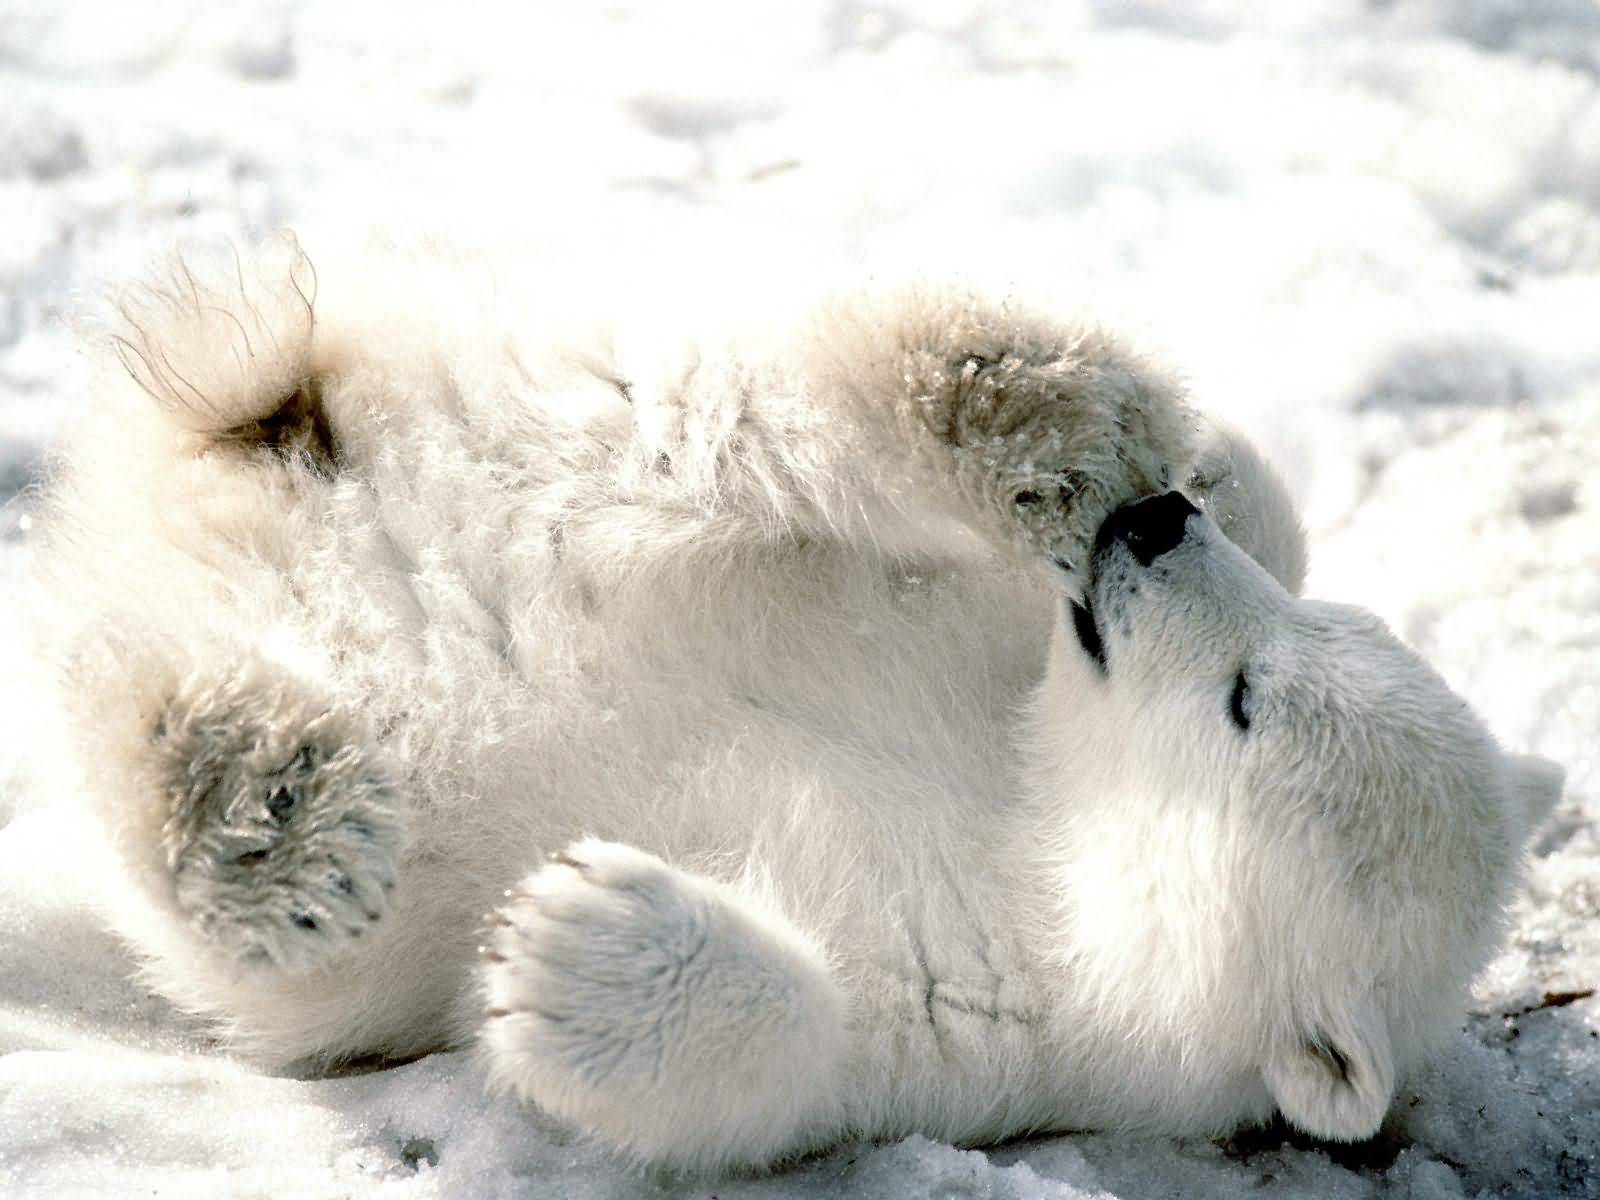 meilleur papier peint animal,ours polaire,ours,museau,arctique,fourrure